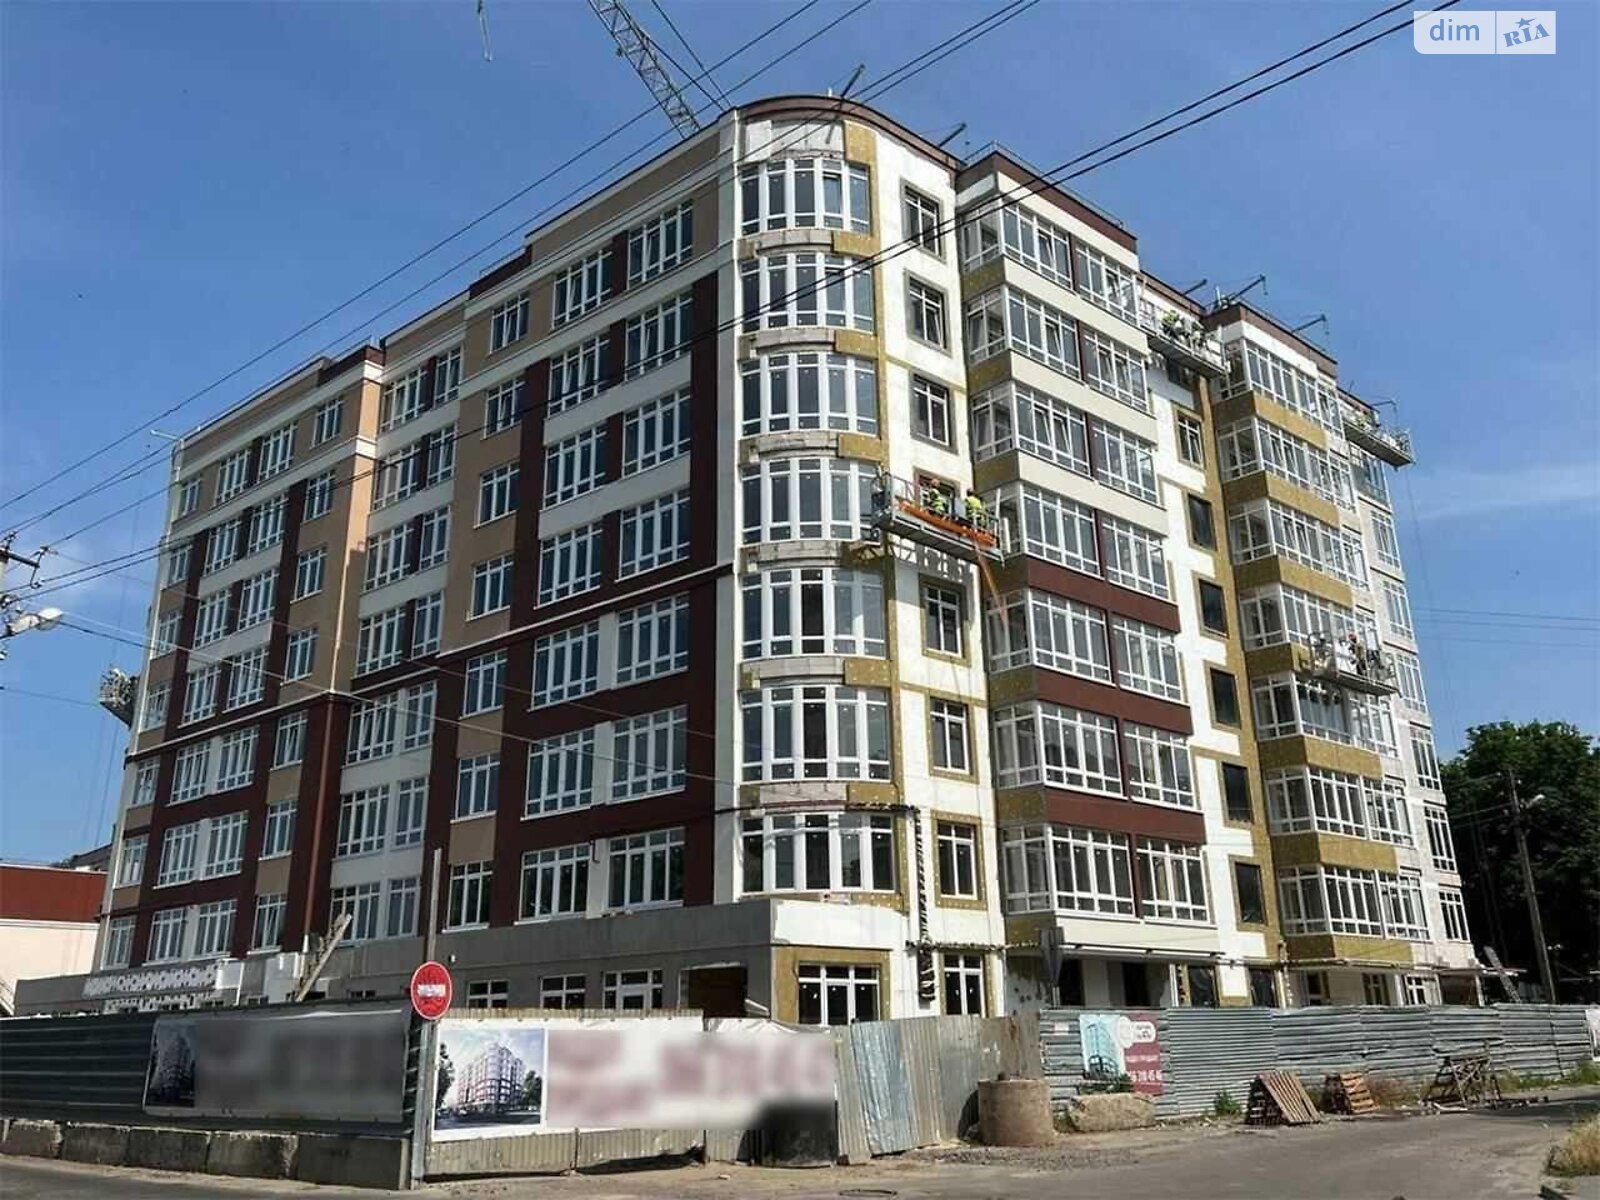 Продажа однокомнатной квартиры в Полтаве, на ул. Шевченко 96, район ДК ПТК фото 1